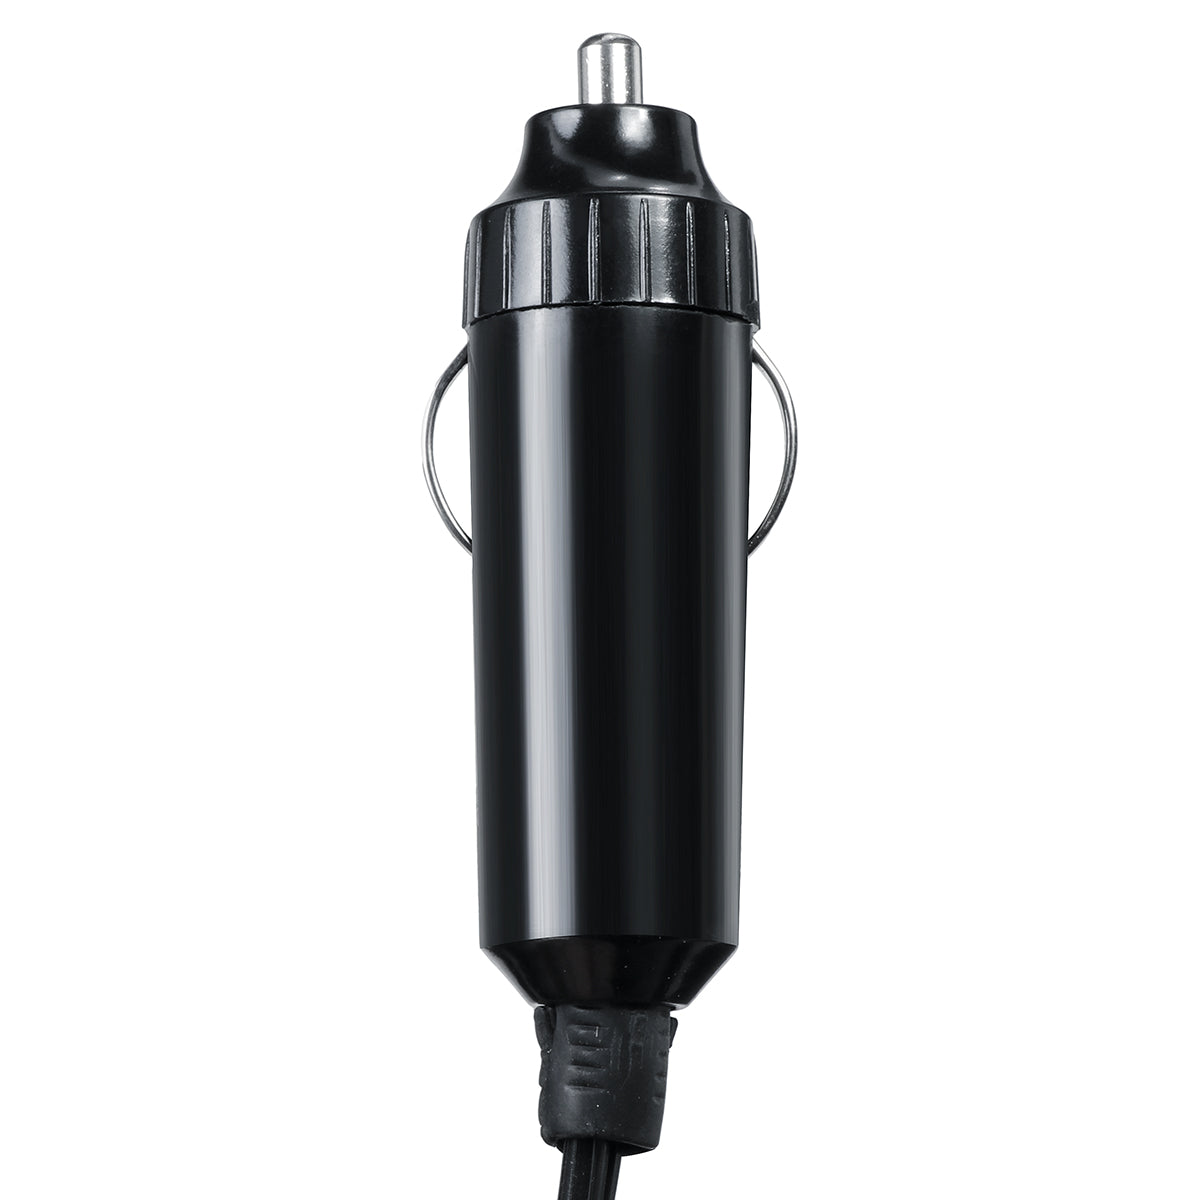 Black 12V/24V Car Heater 360° Adjustment Heater/Cooling Fan Air Purifier Defrost Tool